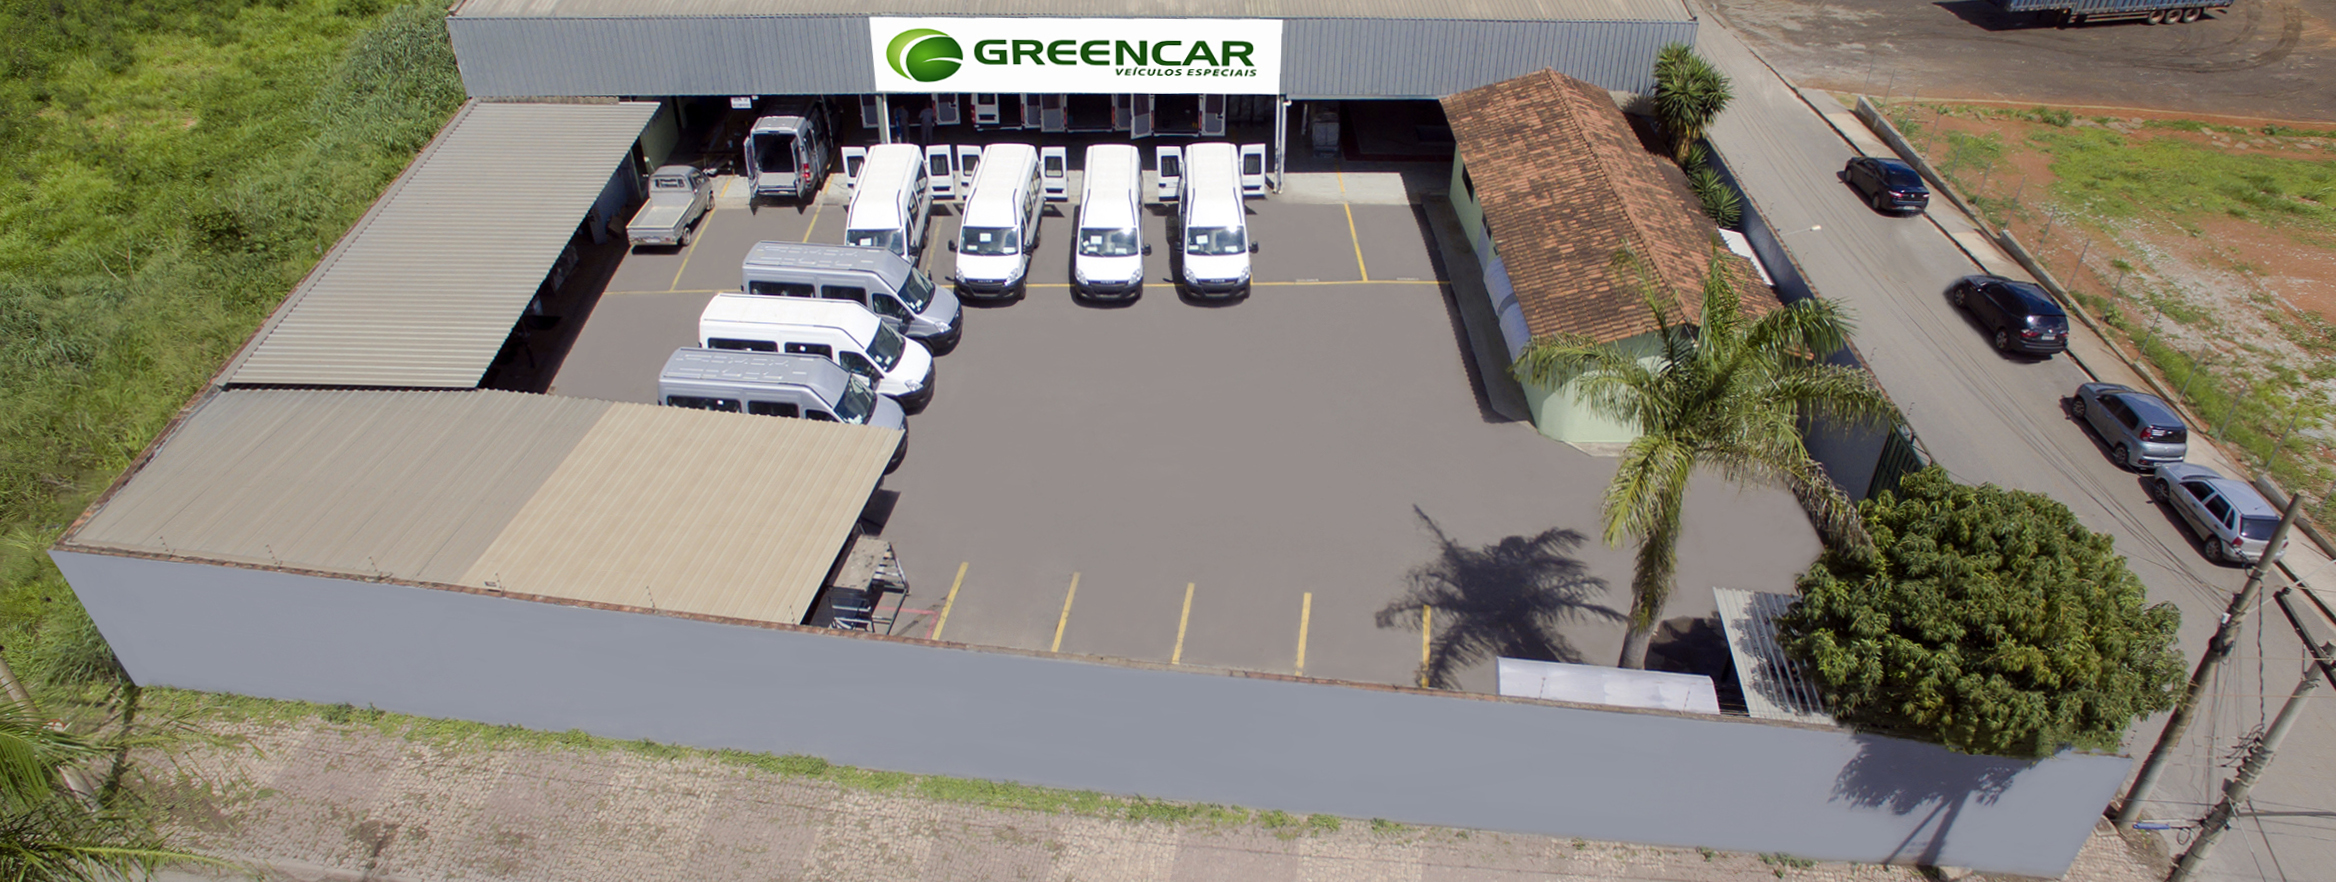 Greencar Veículos Especiais - Nossa História